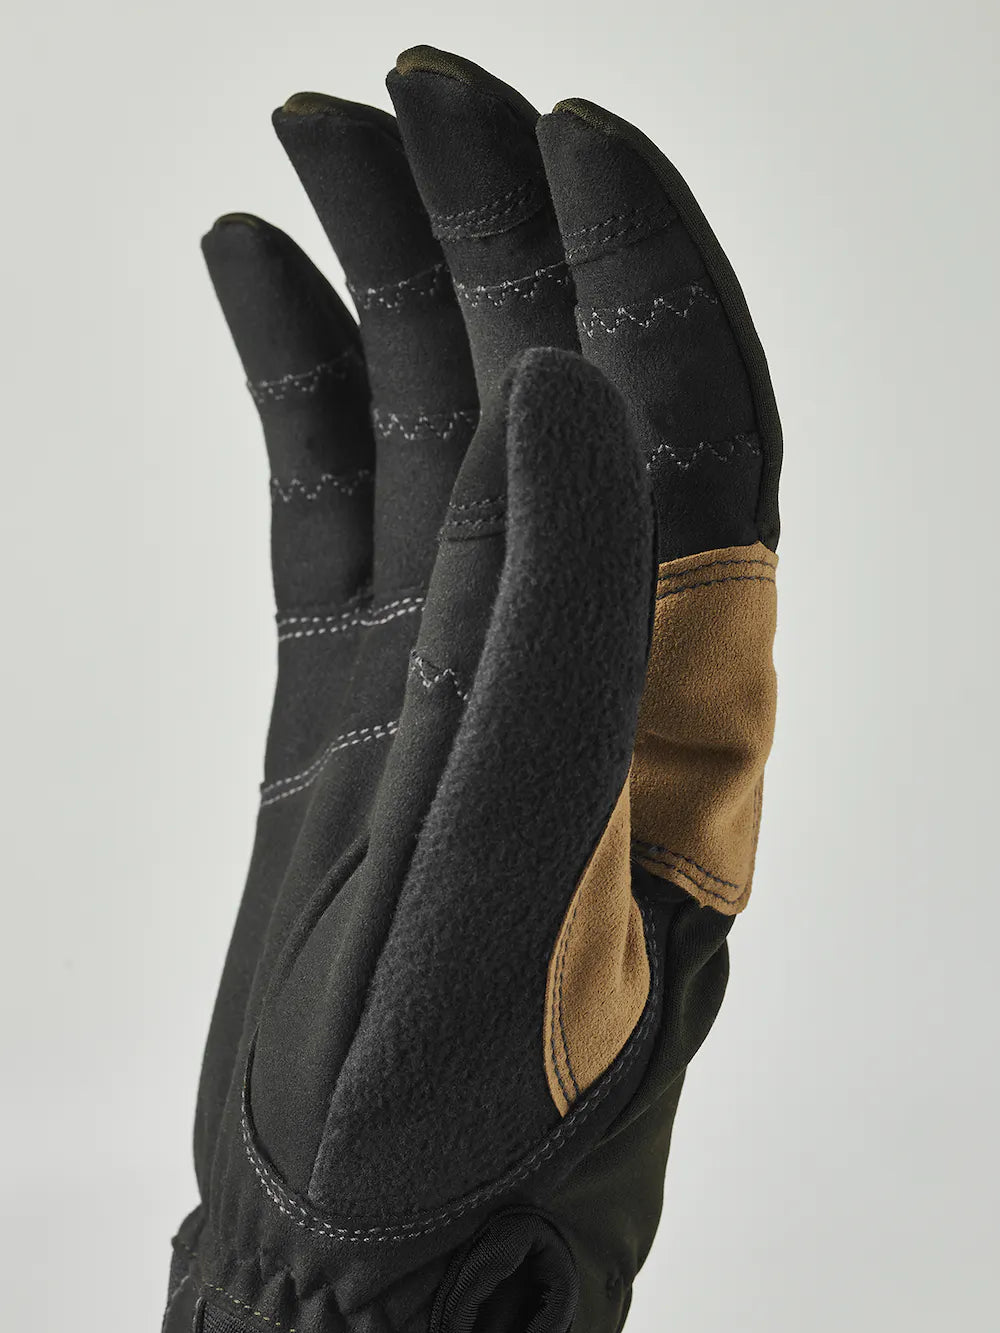 Ergo Grip Active Wool Terry - 5 finger (Size 7) - Dark forest / Black